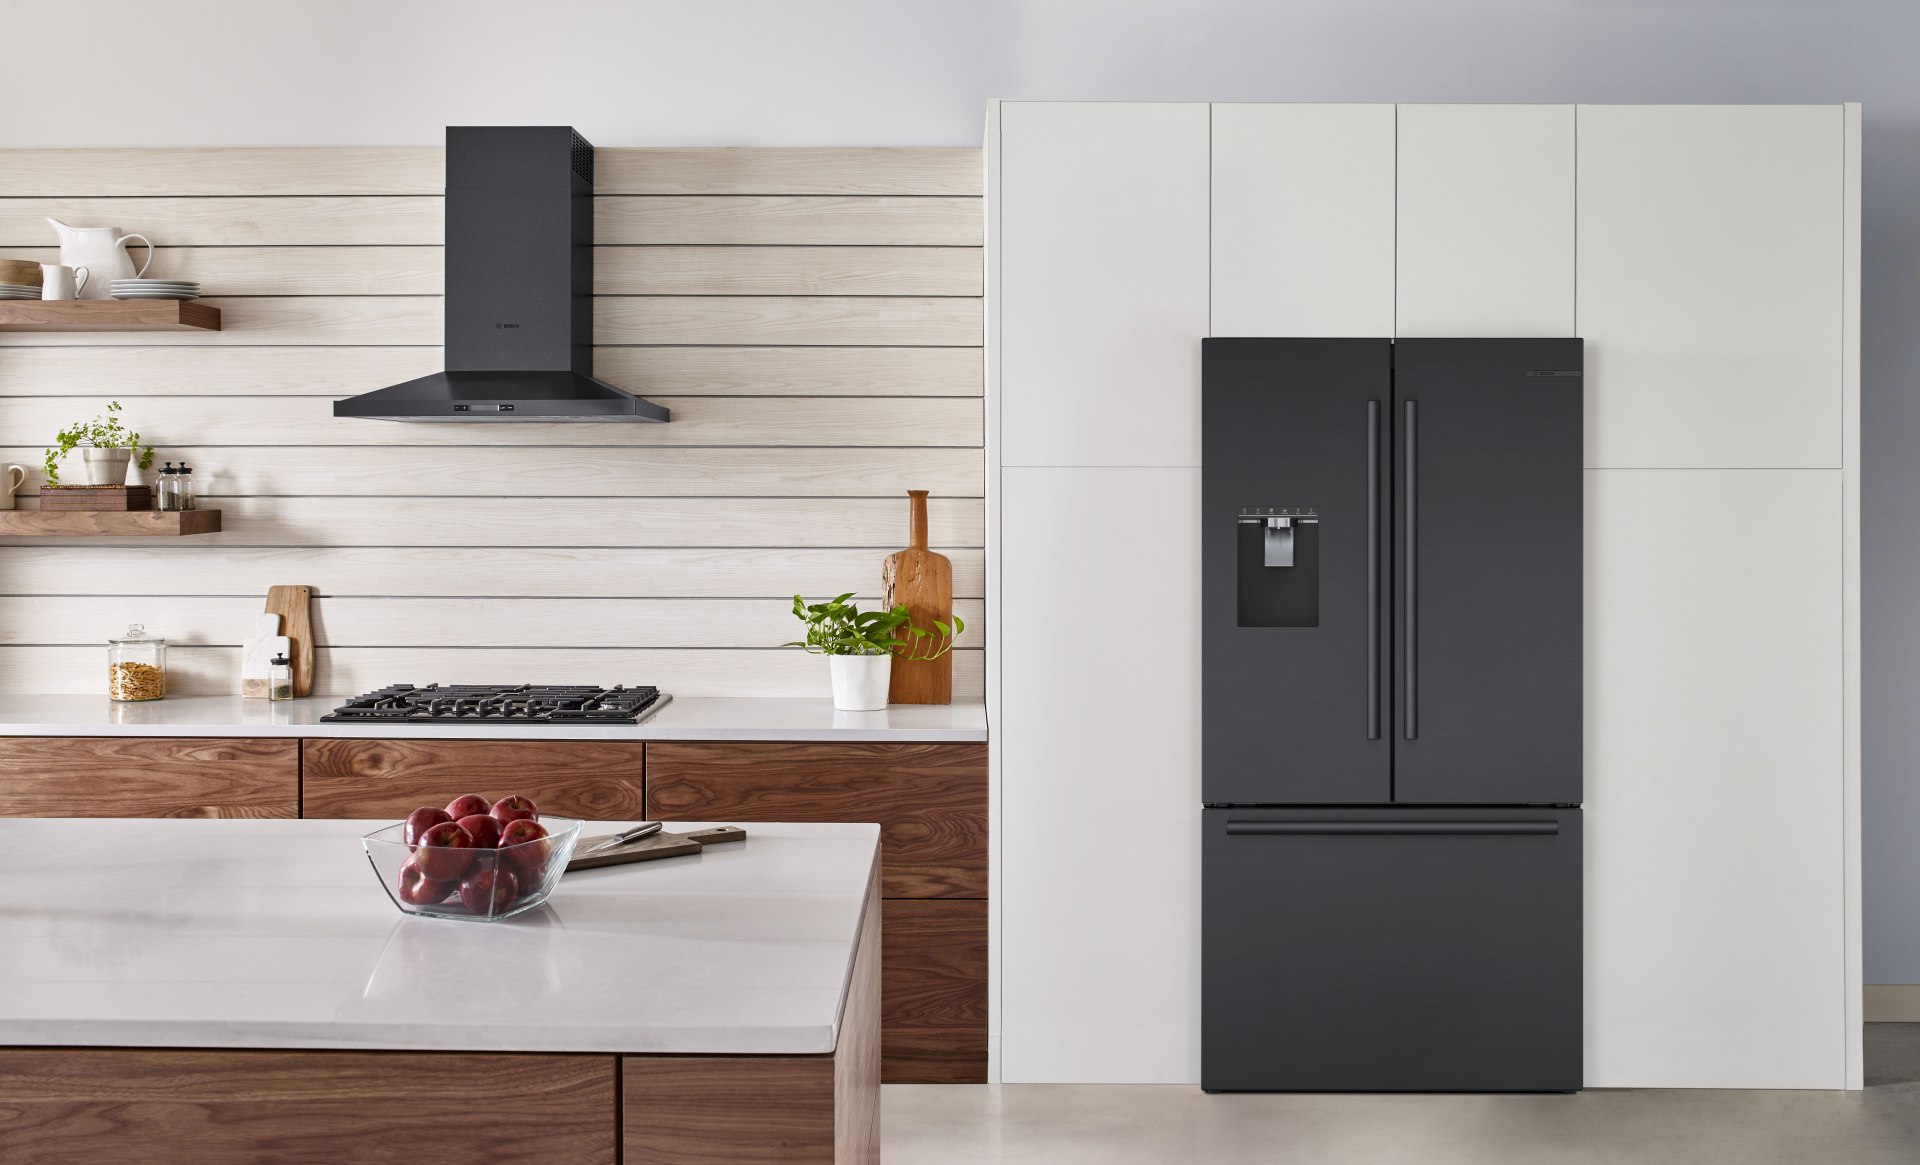 stainless steel refrigerator kitchen